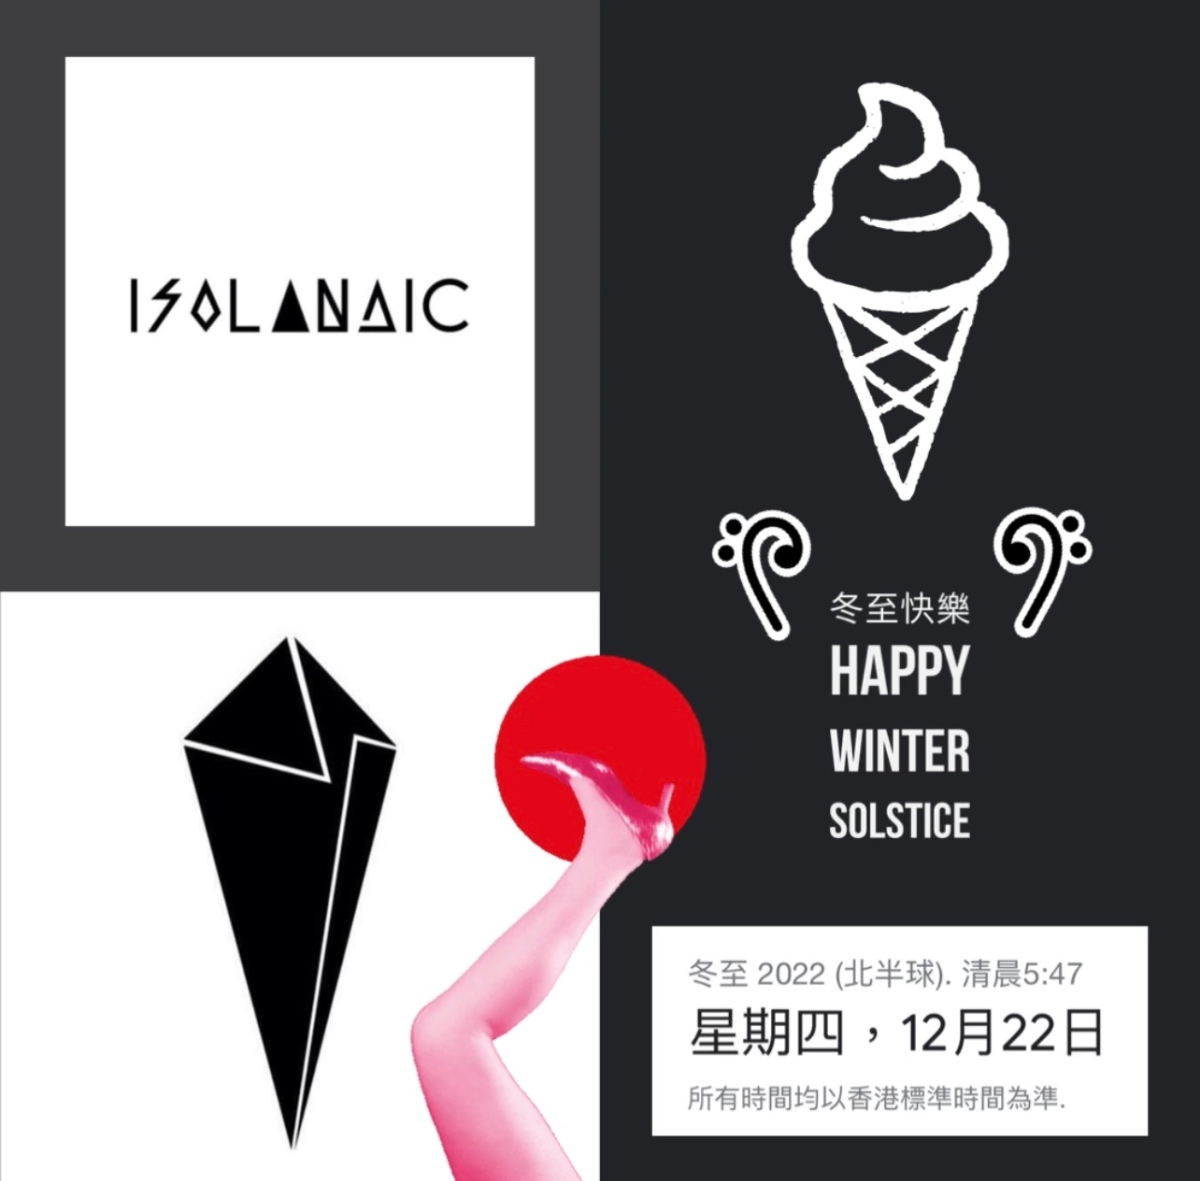 冬至快樂 Happy Winter Solstice’s 2022